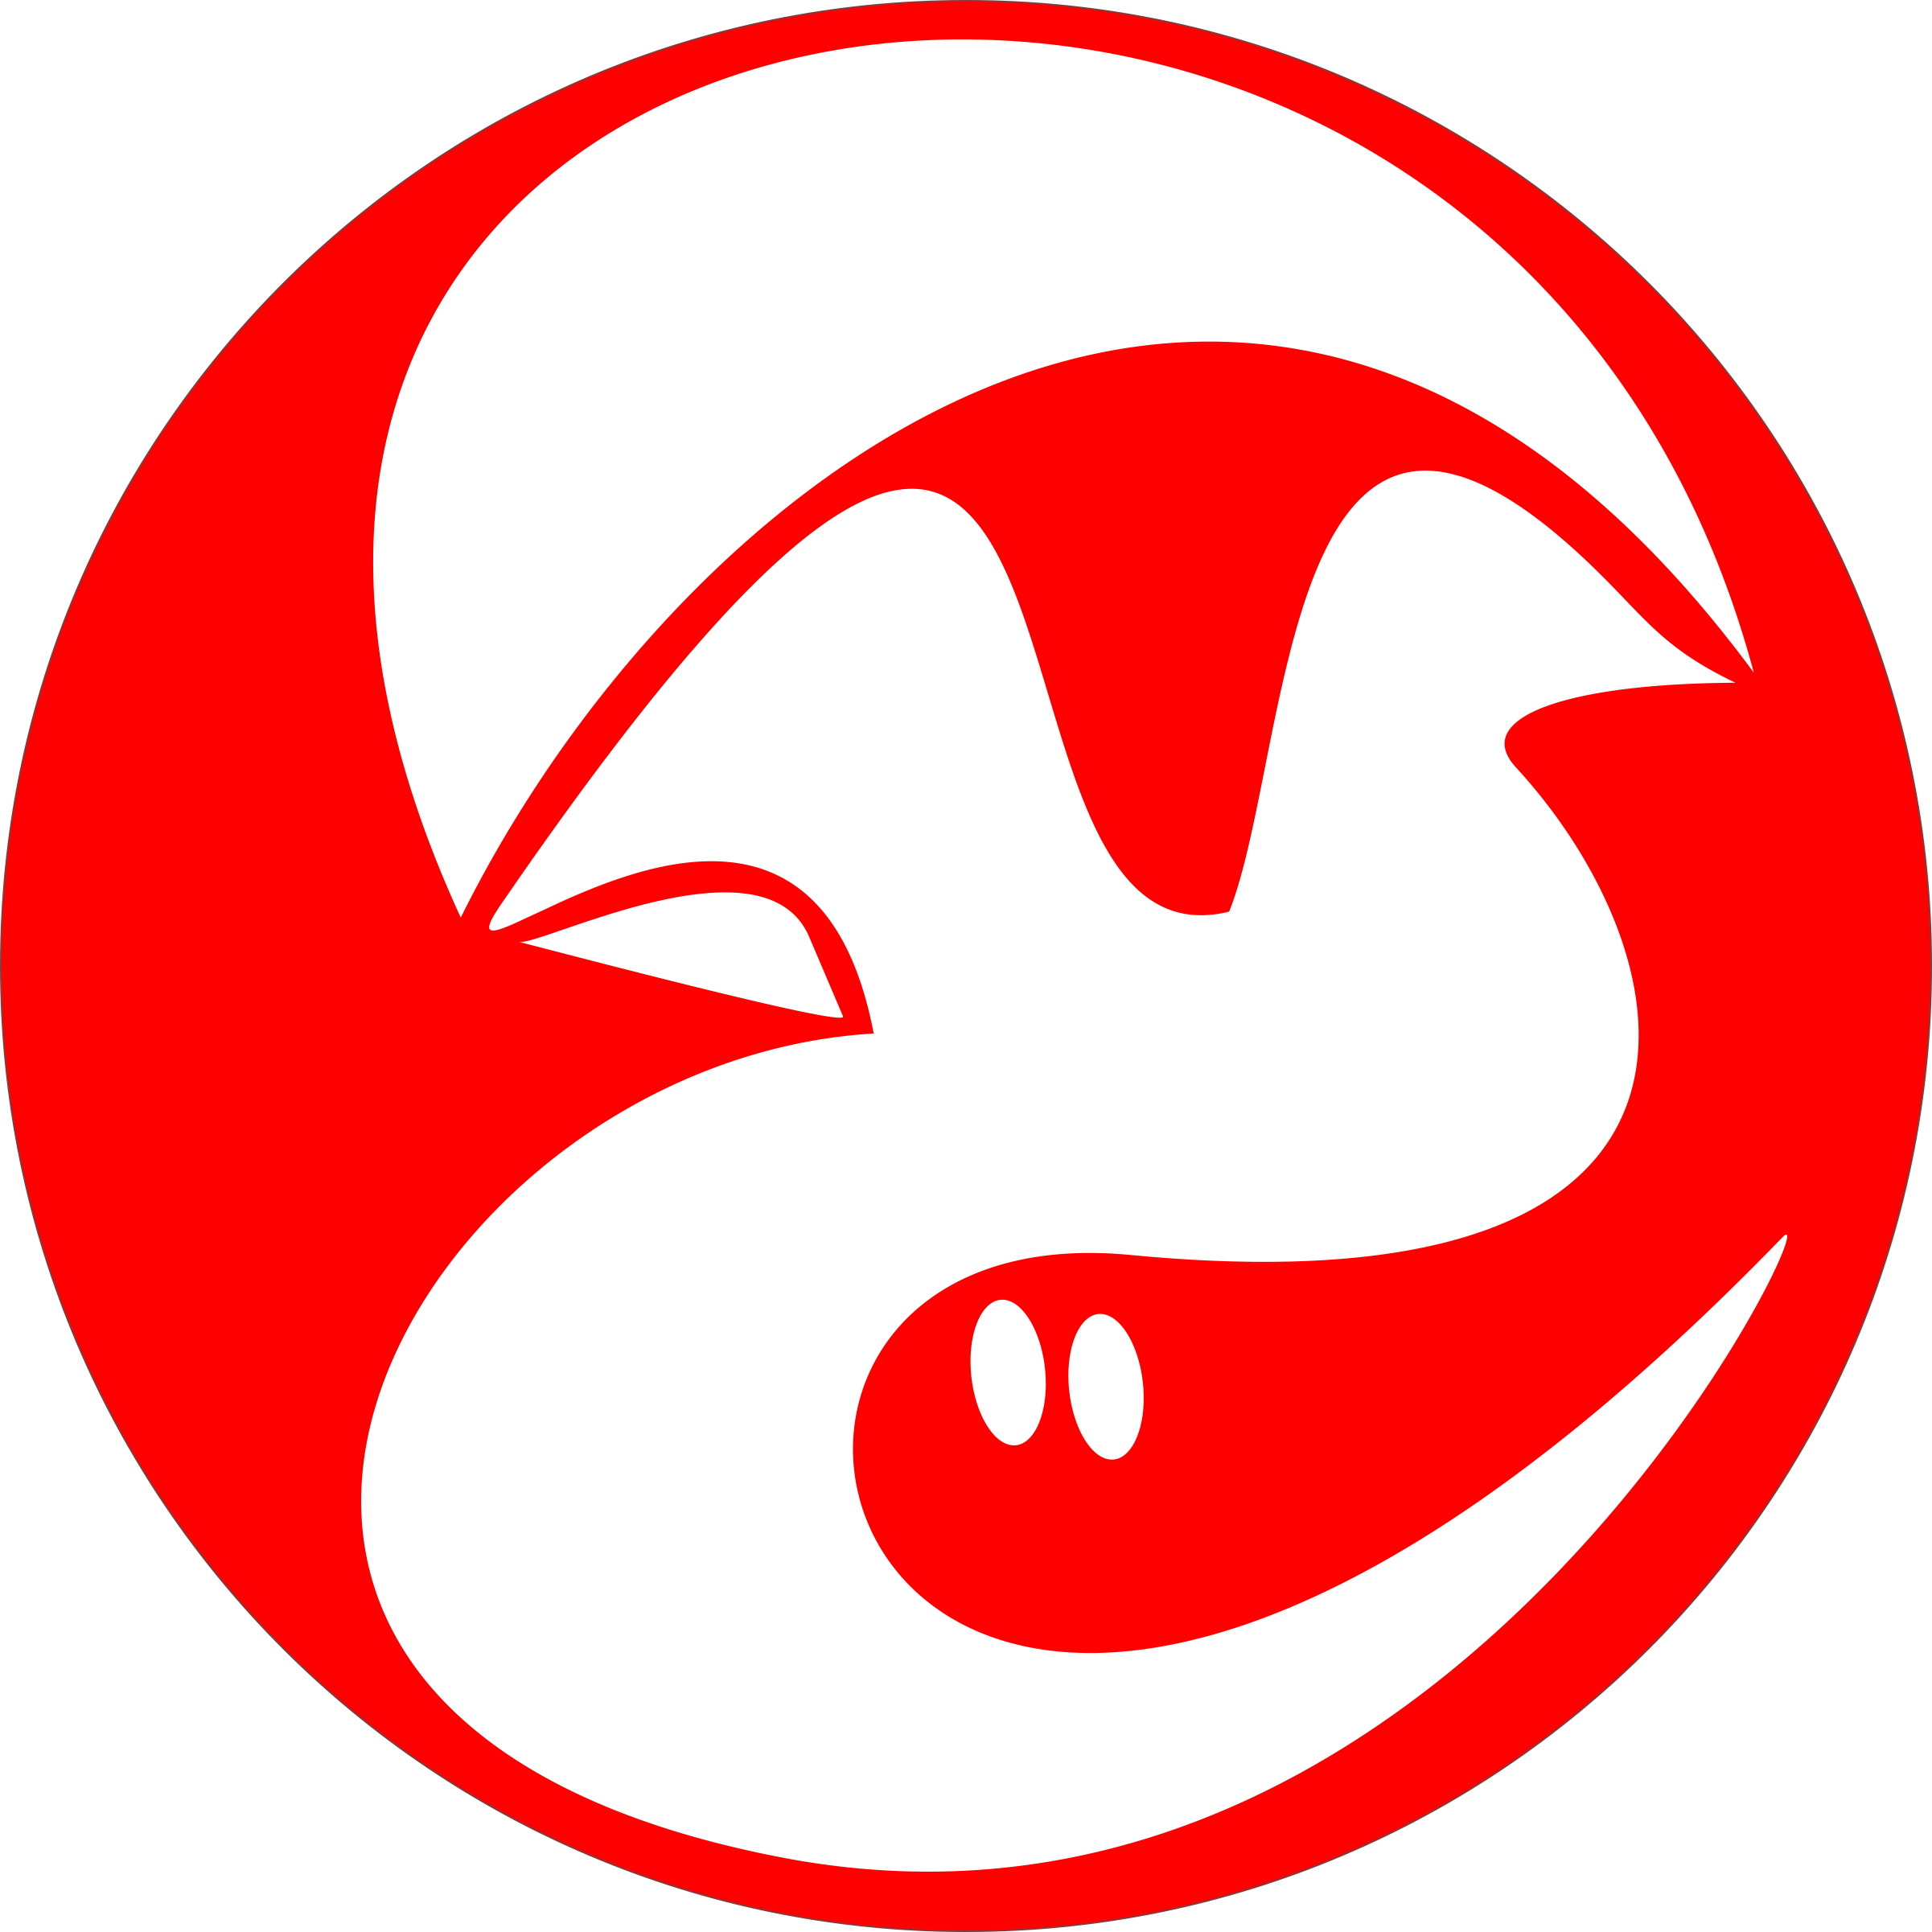 Flowbite Logo